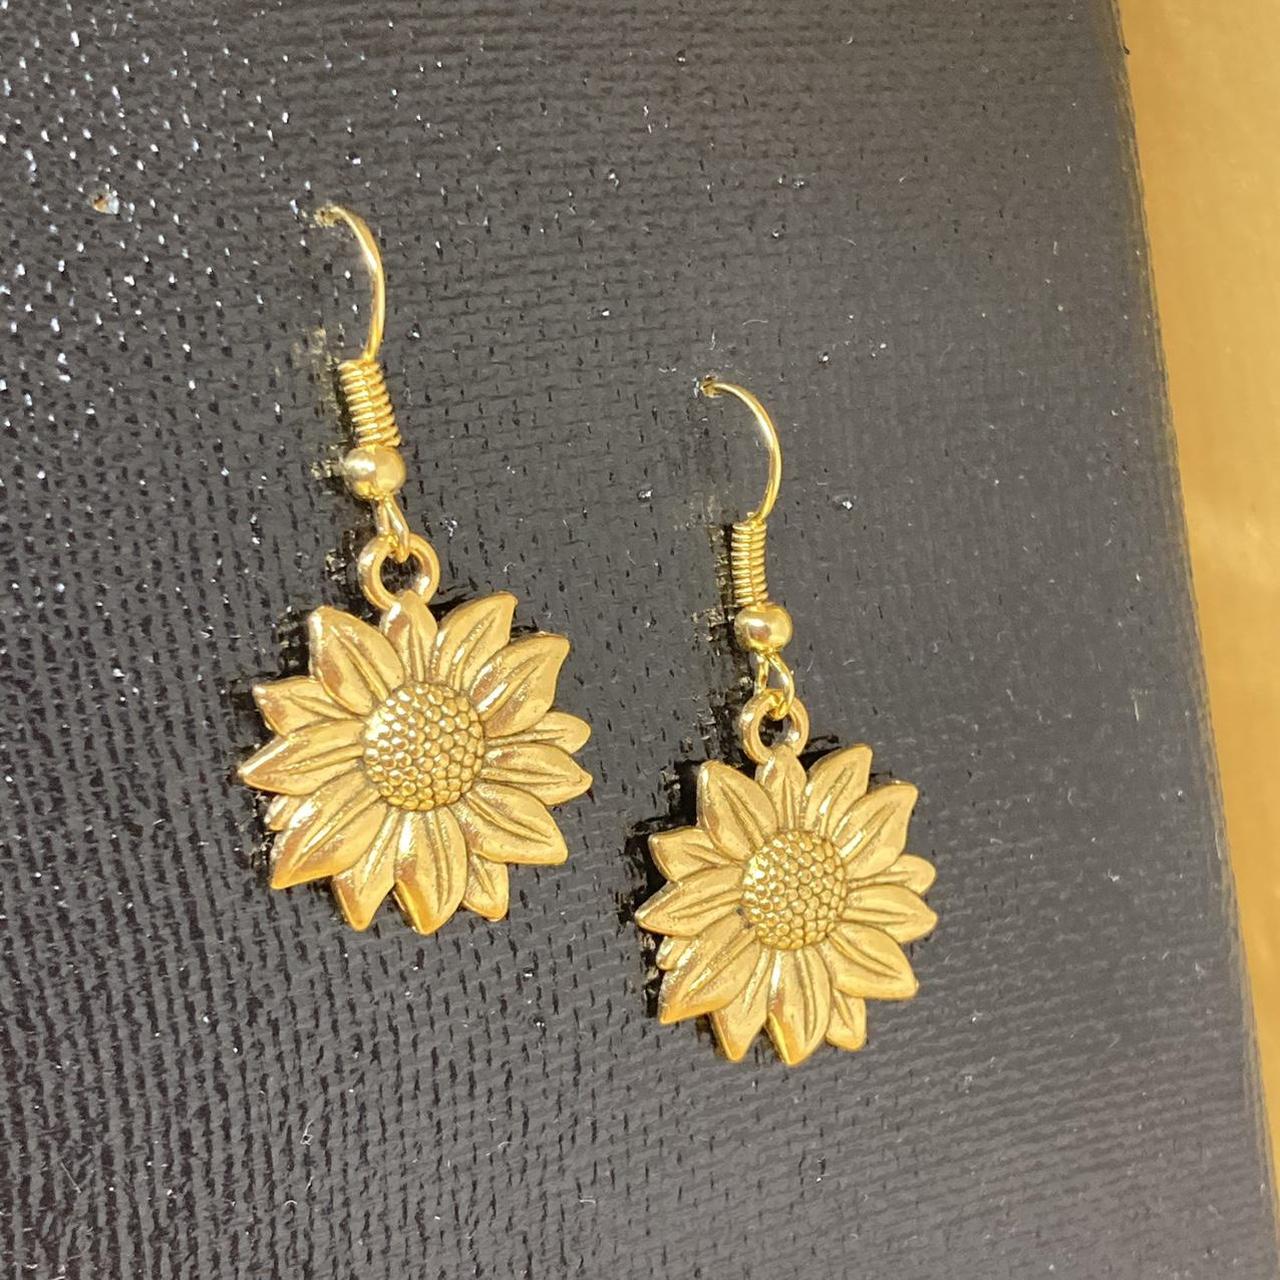 Product Image 1 - Golden sunflower dangle earrings!🌻🔥

☀️$8☀️ +